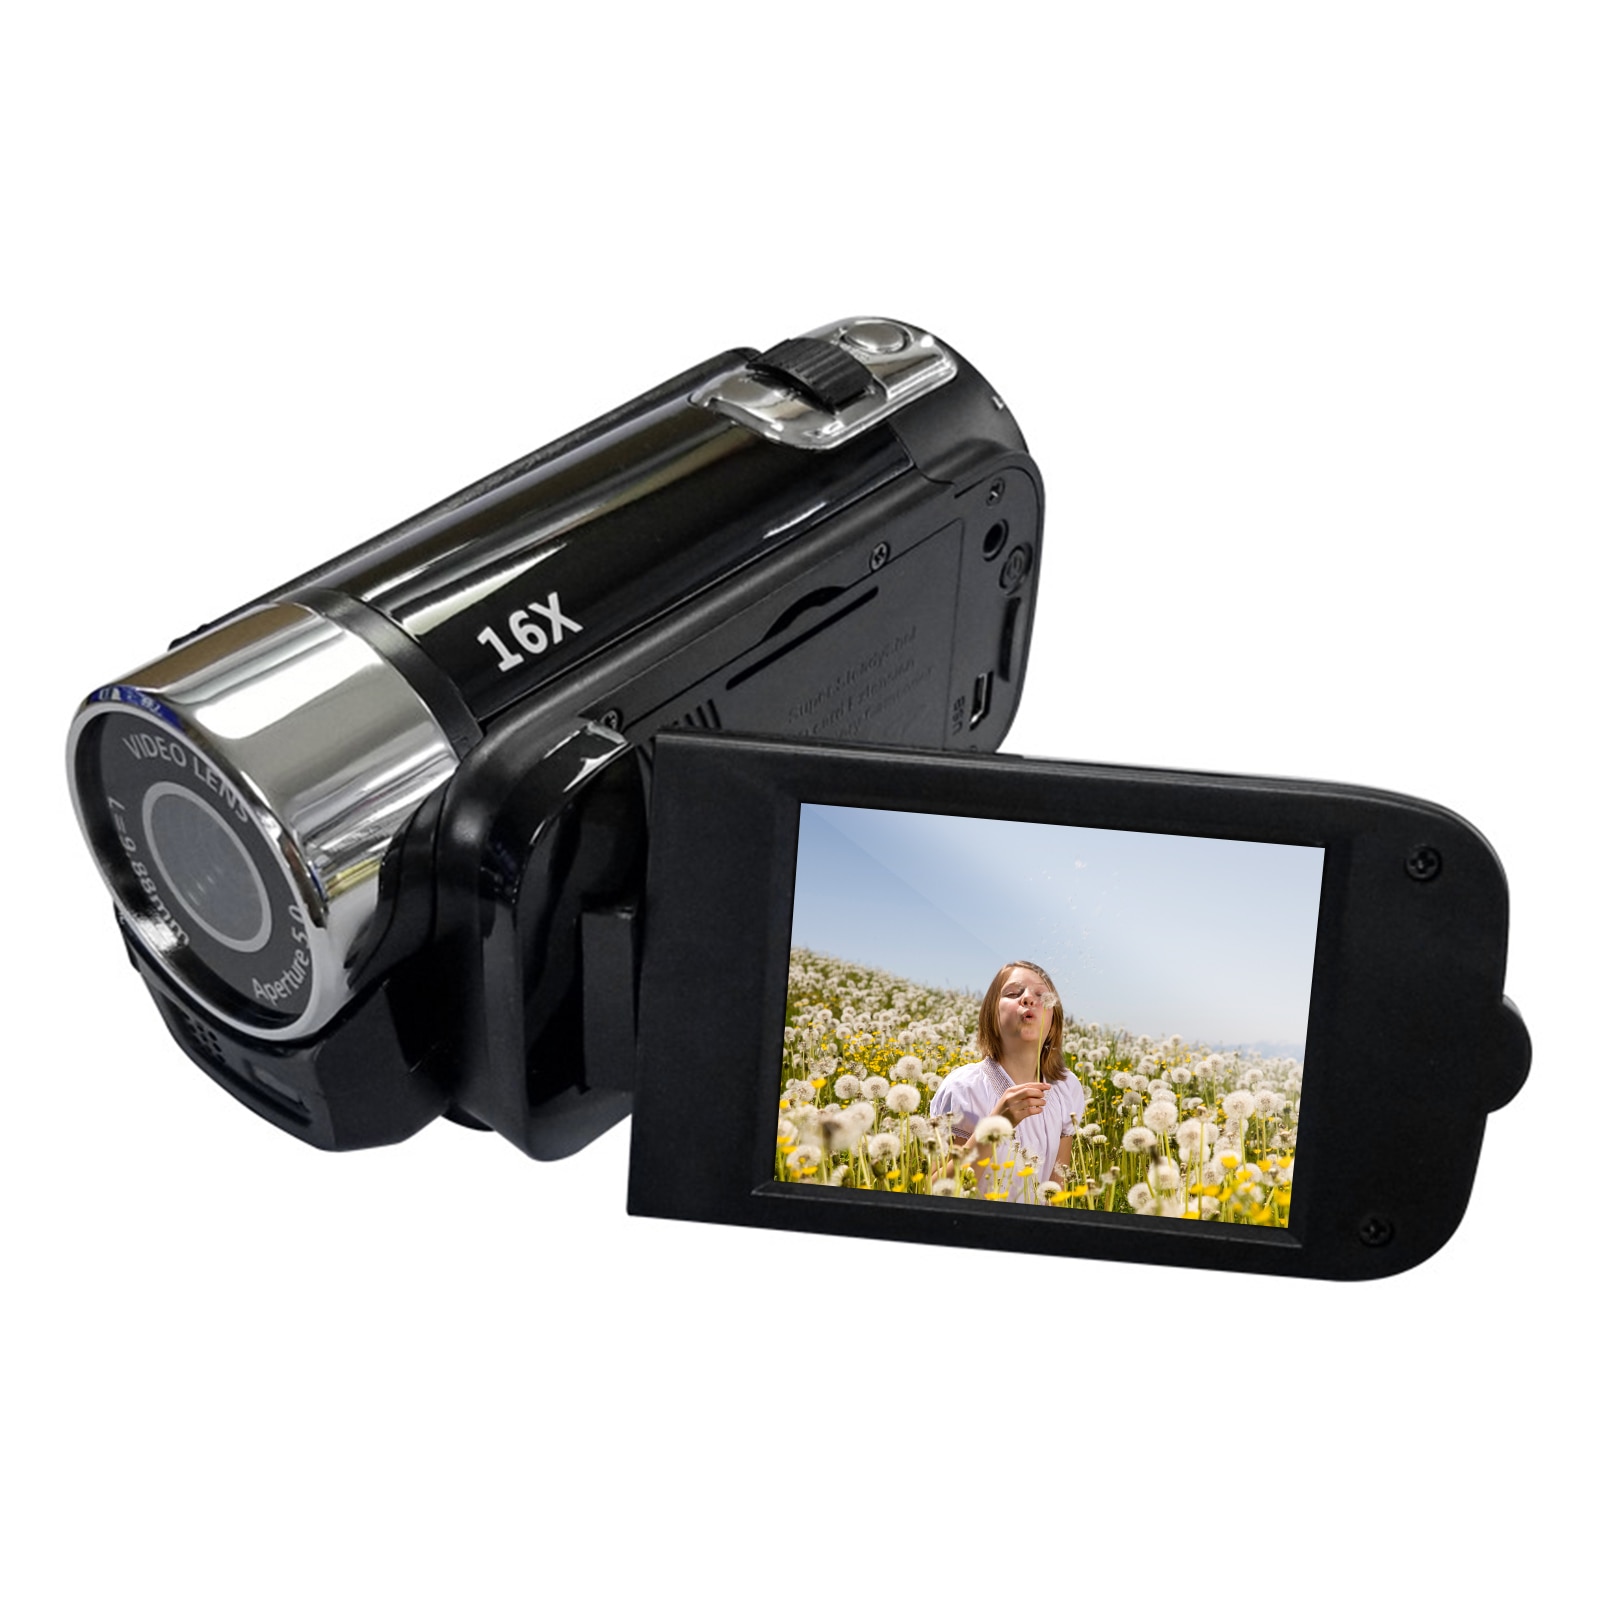 Videocamera digitale ad alta definizione portatile 1080P videocamera DV 16MP schermo LCD da 2.7 pollici Zoom digitale 16X batteria integrata